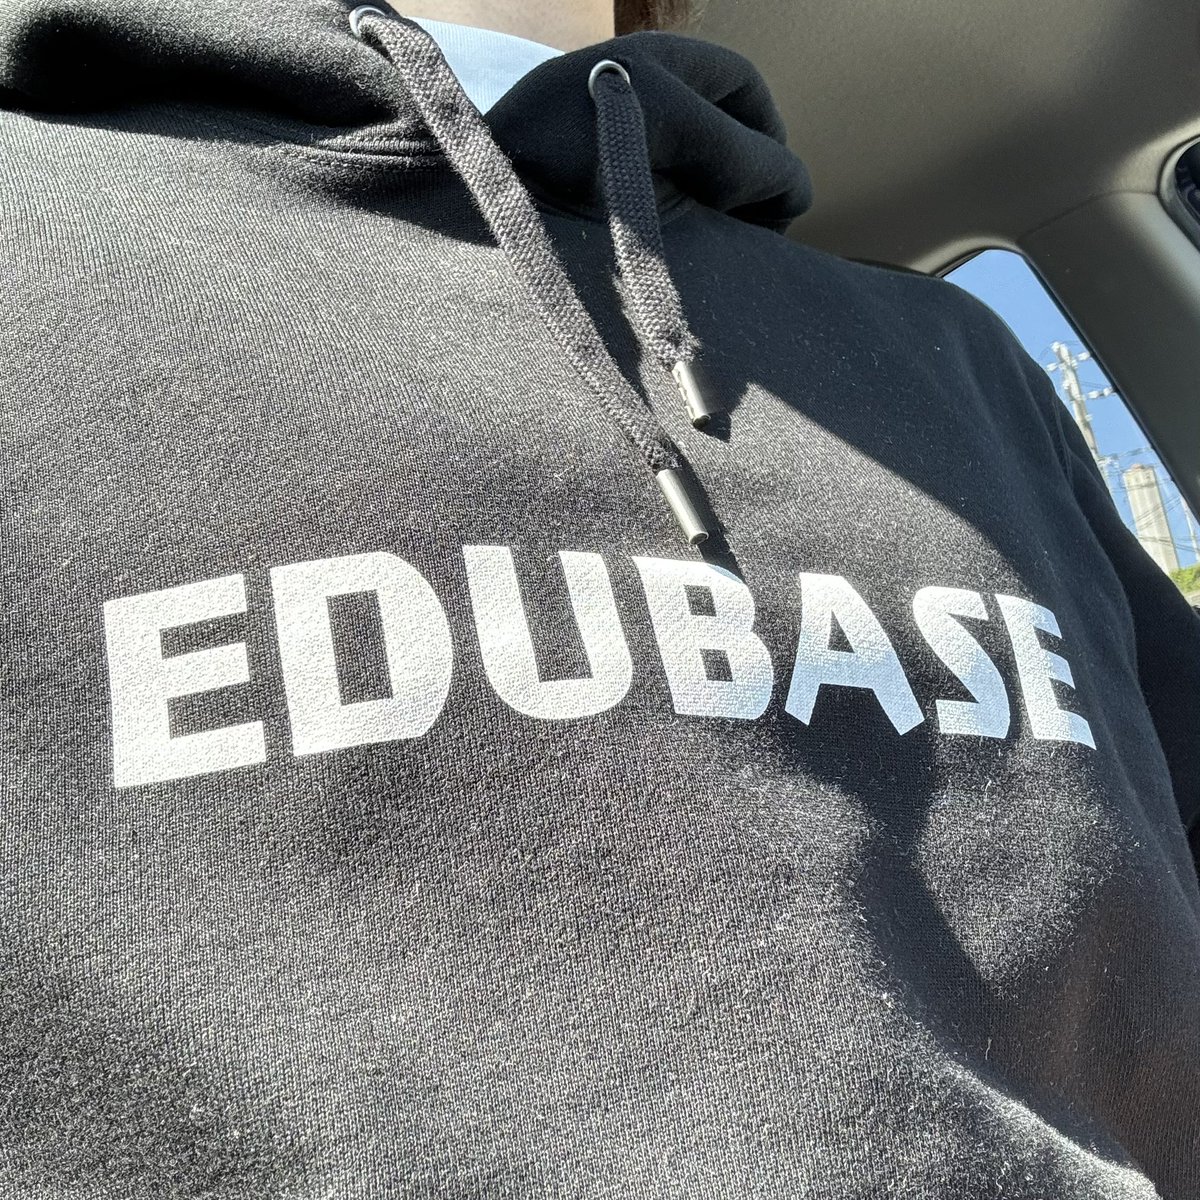 着てはいるんだ。。。

#EDUBASE
#EDUBASEFES